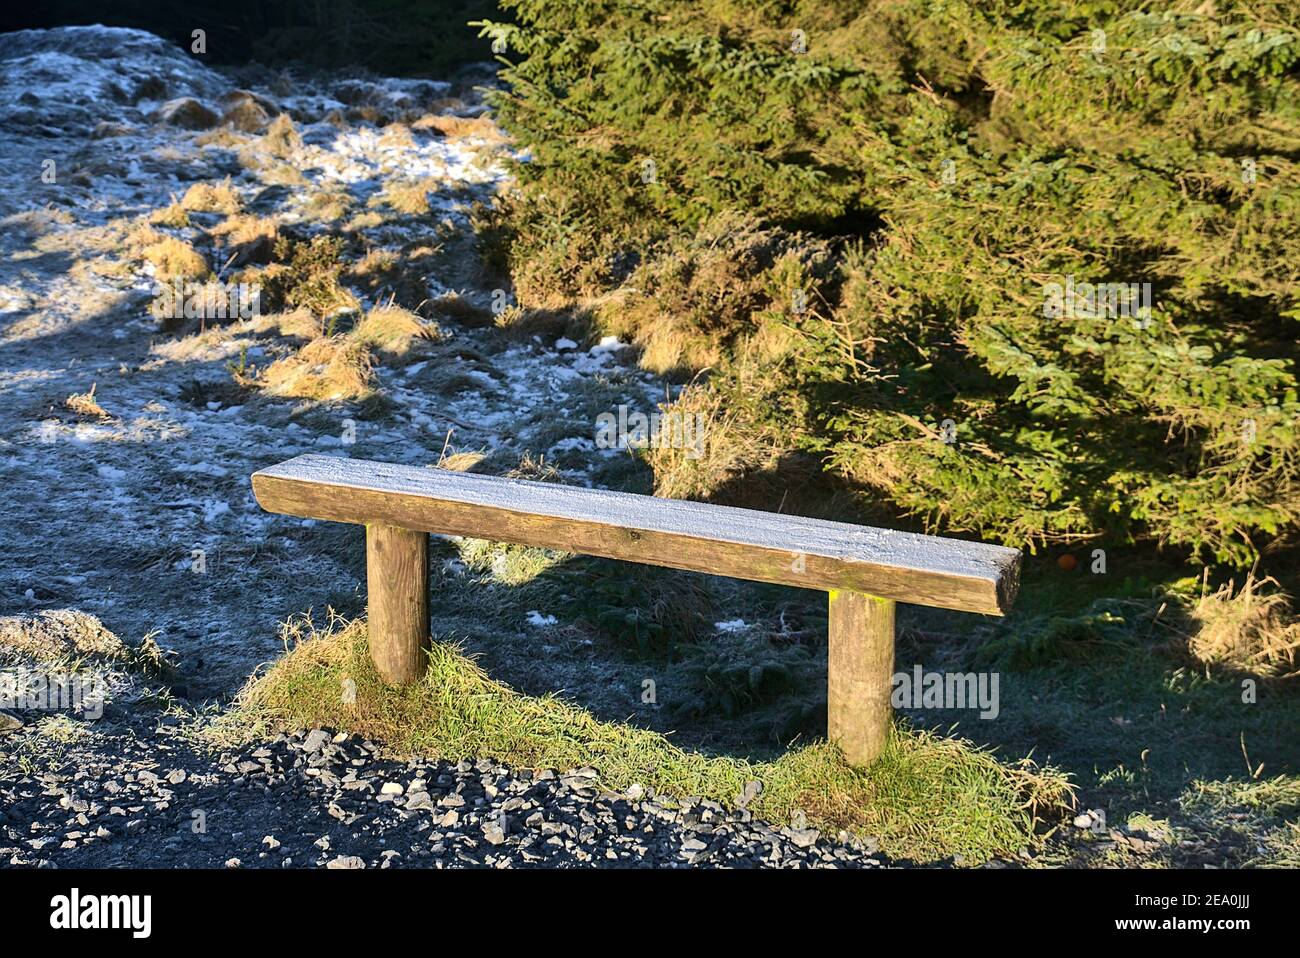 Belle vue sur un petit banc en bois recouvert de givre à côté de la route dans le parc forestier national de Tichknock, Co. Dublin, Irlande Banque D'Images